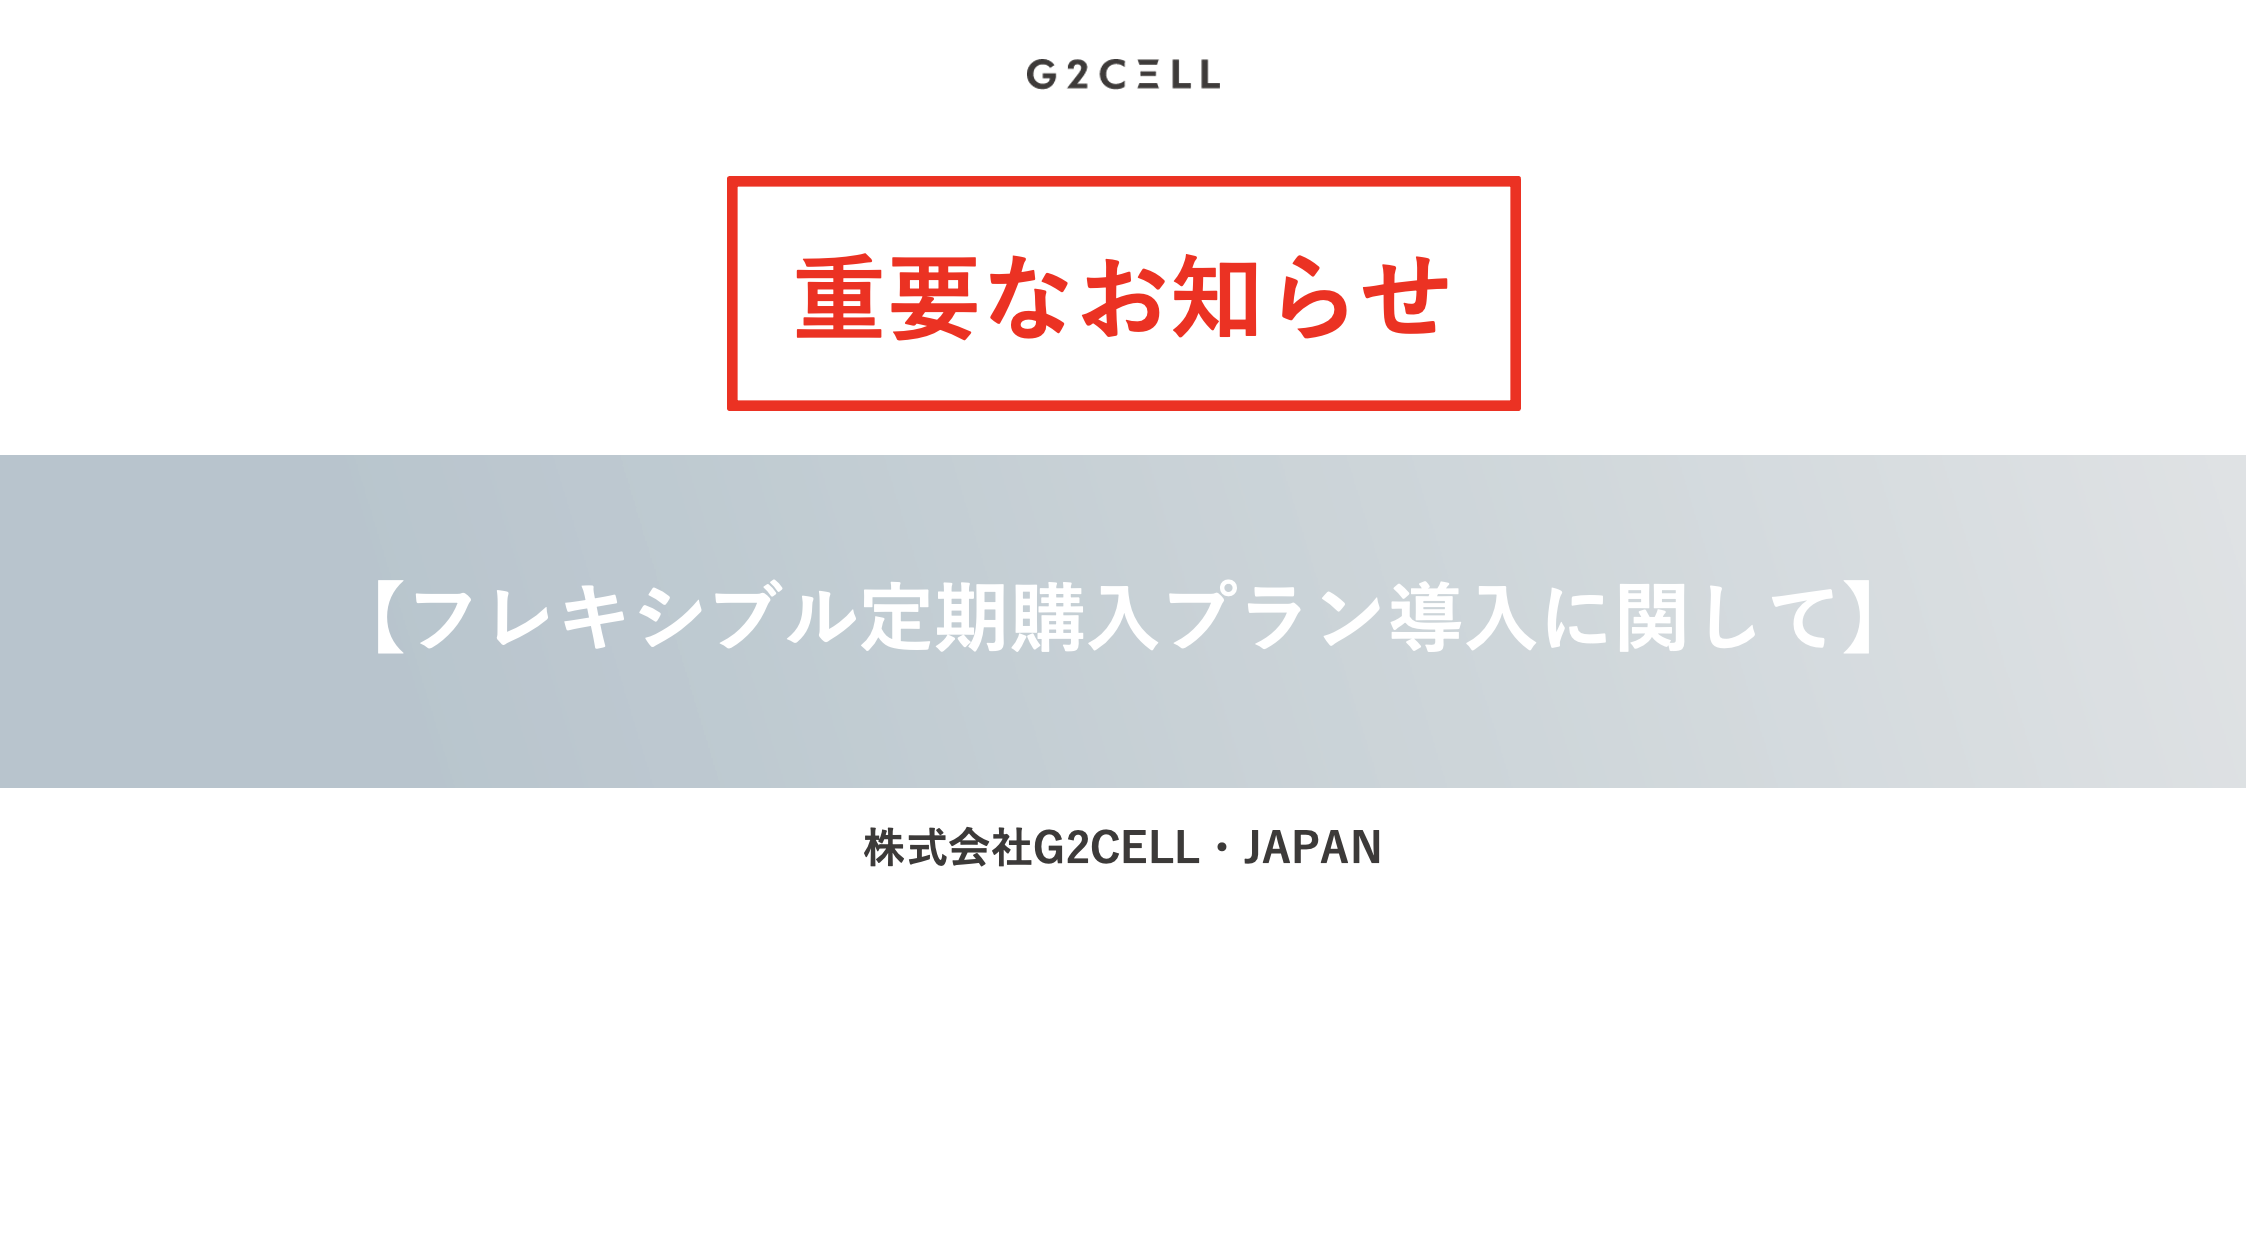 G2CELL・JAPANフレキシブル定期購入プラン導入に関して